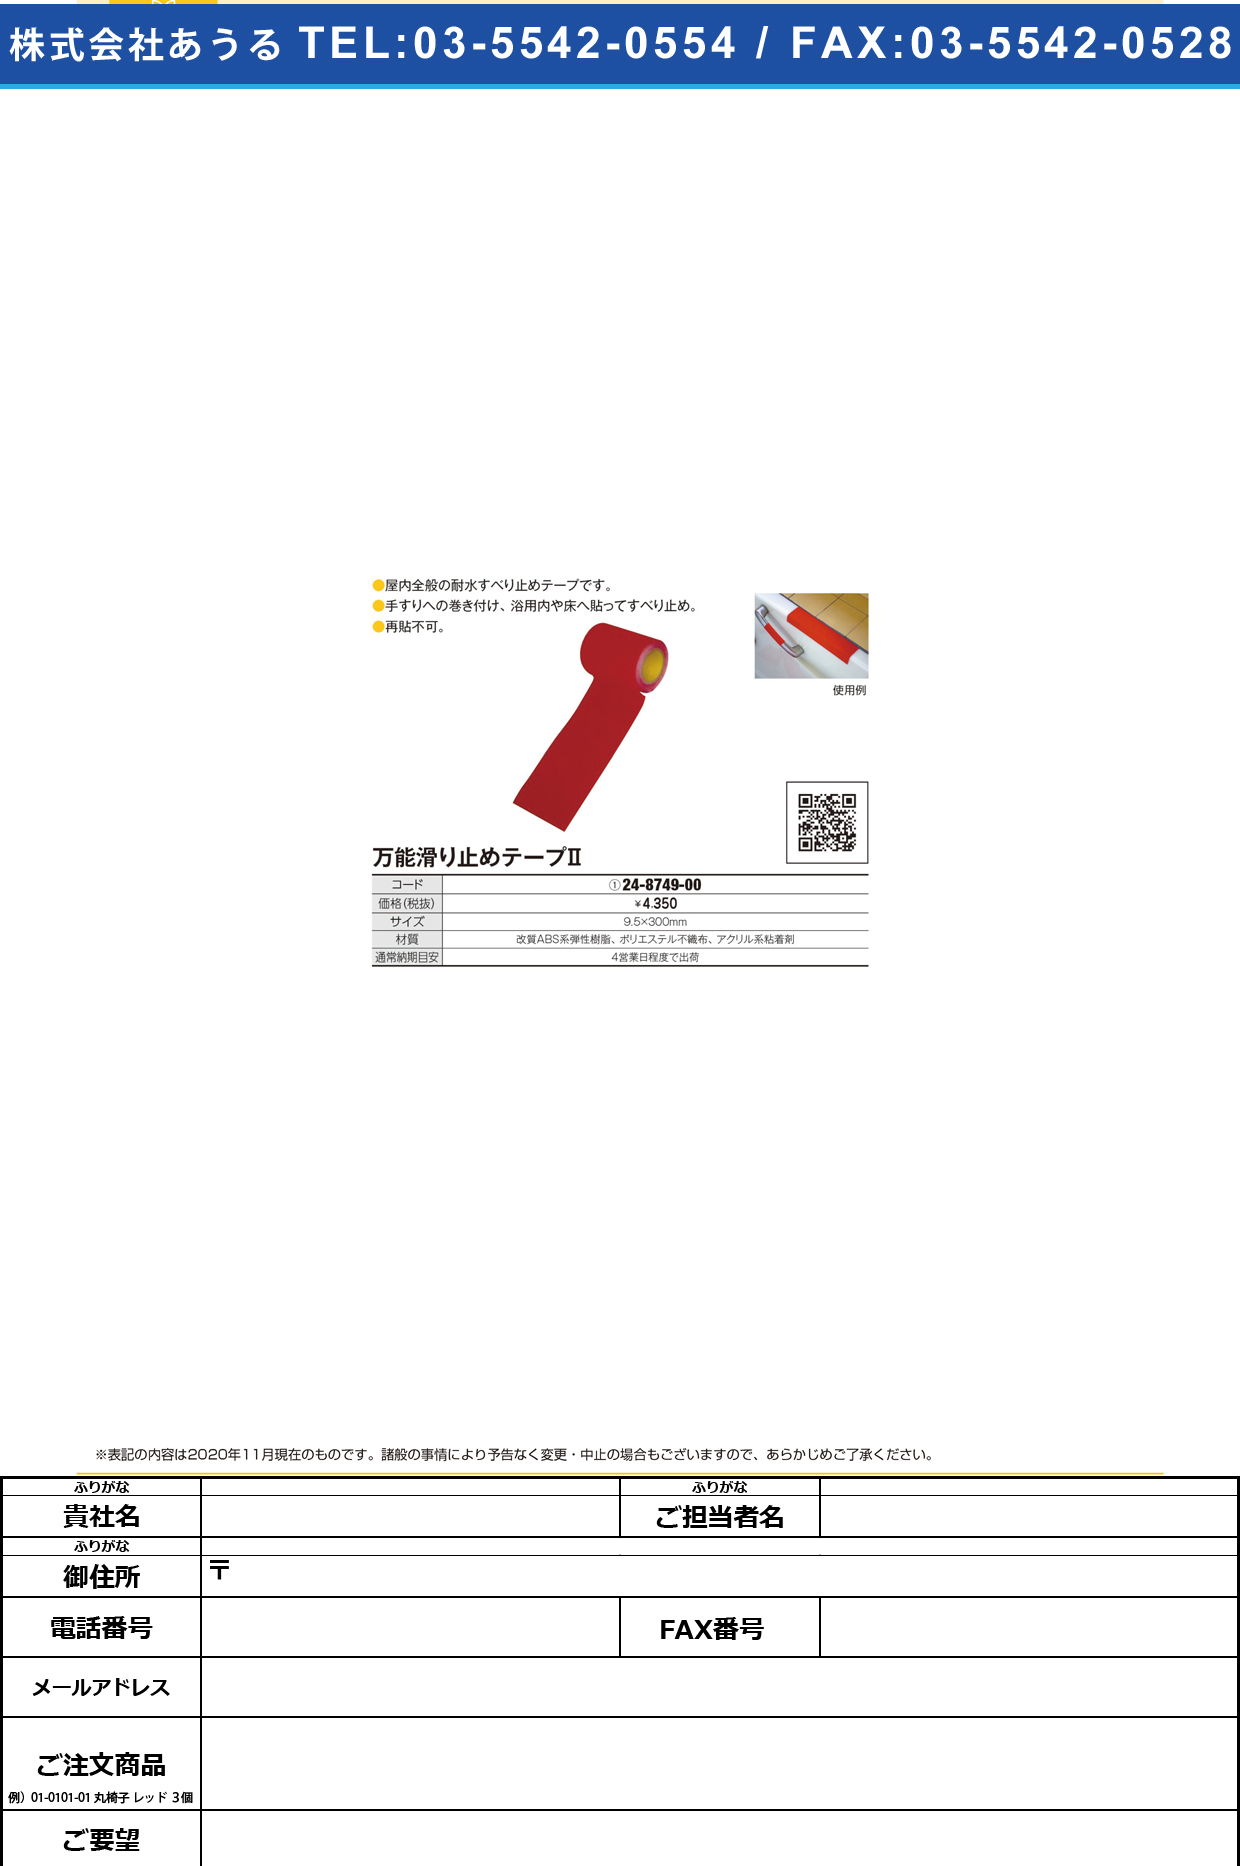 万能滑り止めテープⅡ 95MMX3Mマキ(アカ)95MMX3Mﾏｷ(ｱｶ)(24-8749-00)【ウィズ】(販売単位:1)